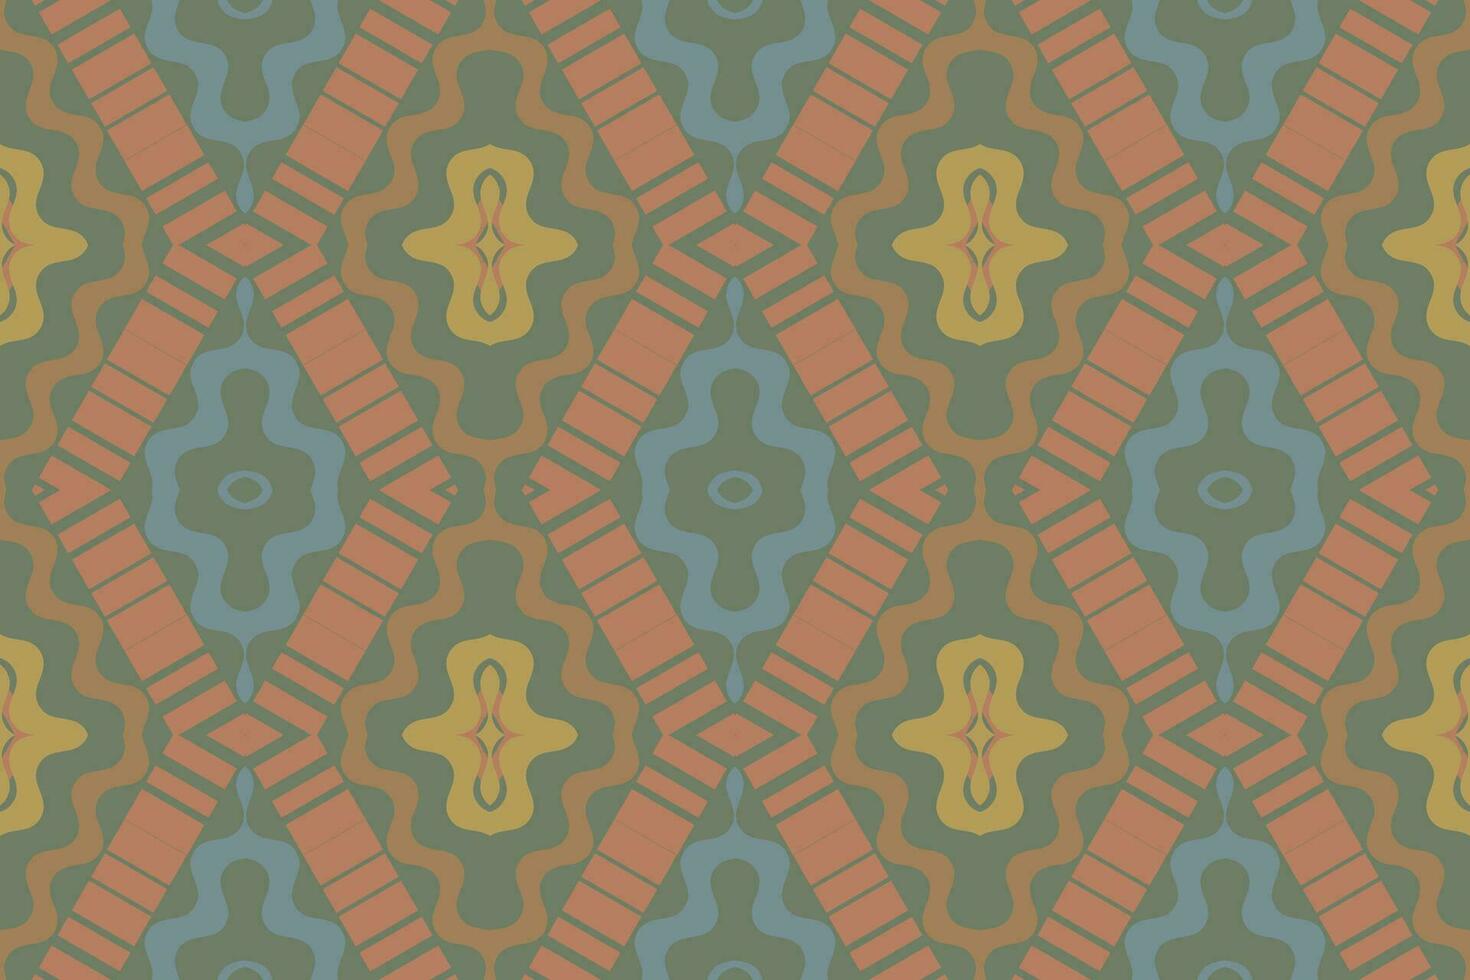 ikat blommig paisley broderi bakgrund. ikat textur geometrisk etnisk orientalisk mönster traditionell. ikat aztec stil abstrakt design för skriva ut textur, tyg, saree, sari, matta. vektor